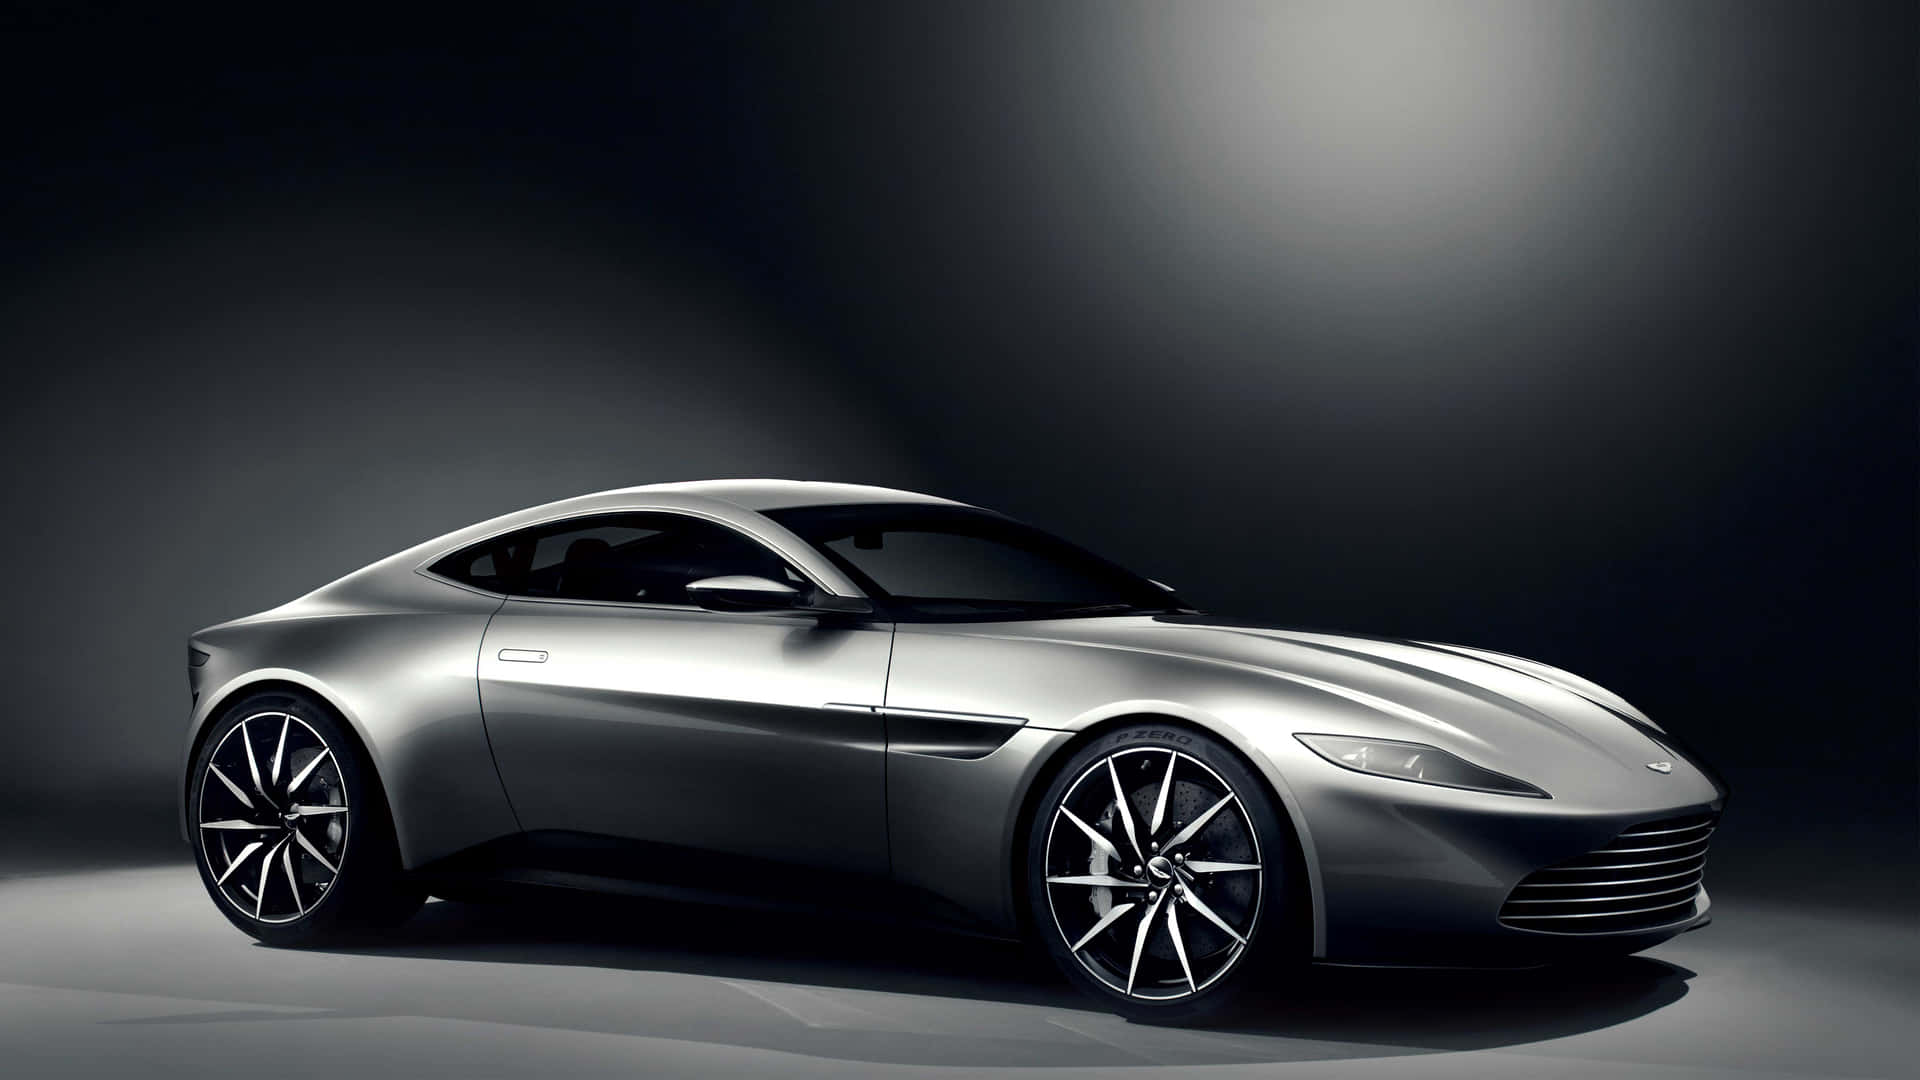 Stil,der Bände Spricht: Der Ikonische Aston Martin.